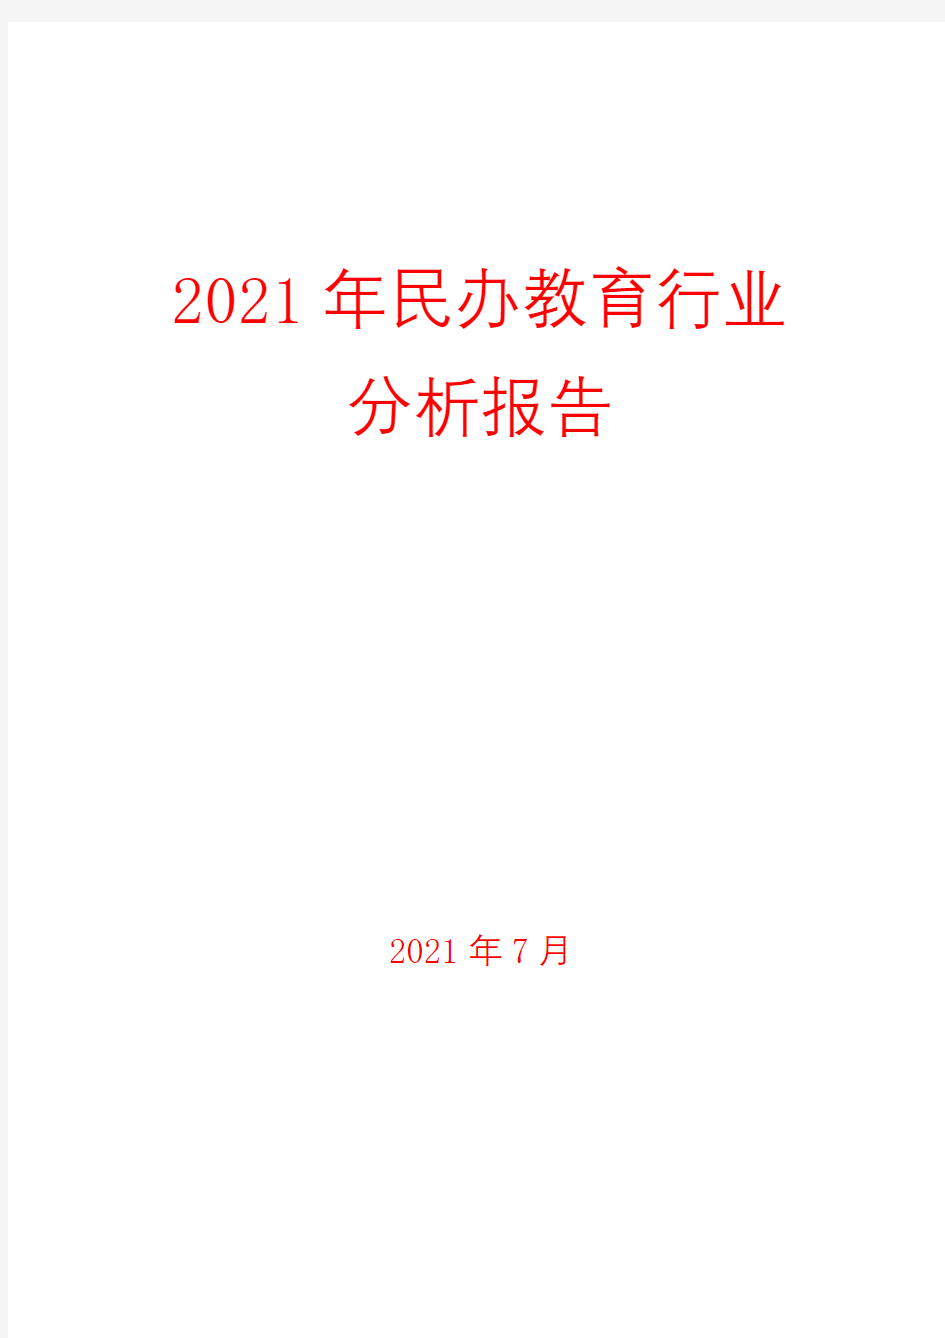 2021年民办教育行业分析报告( word 可编辑版)